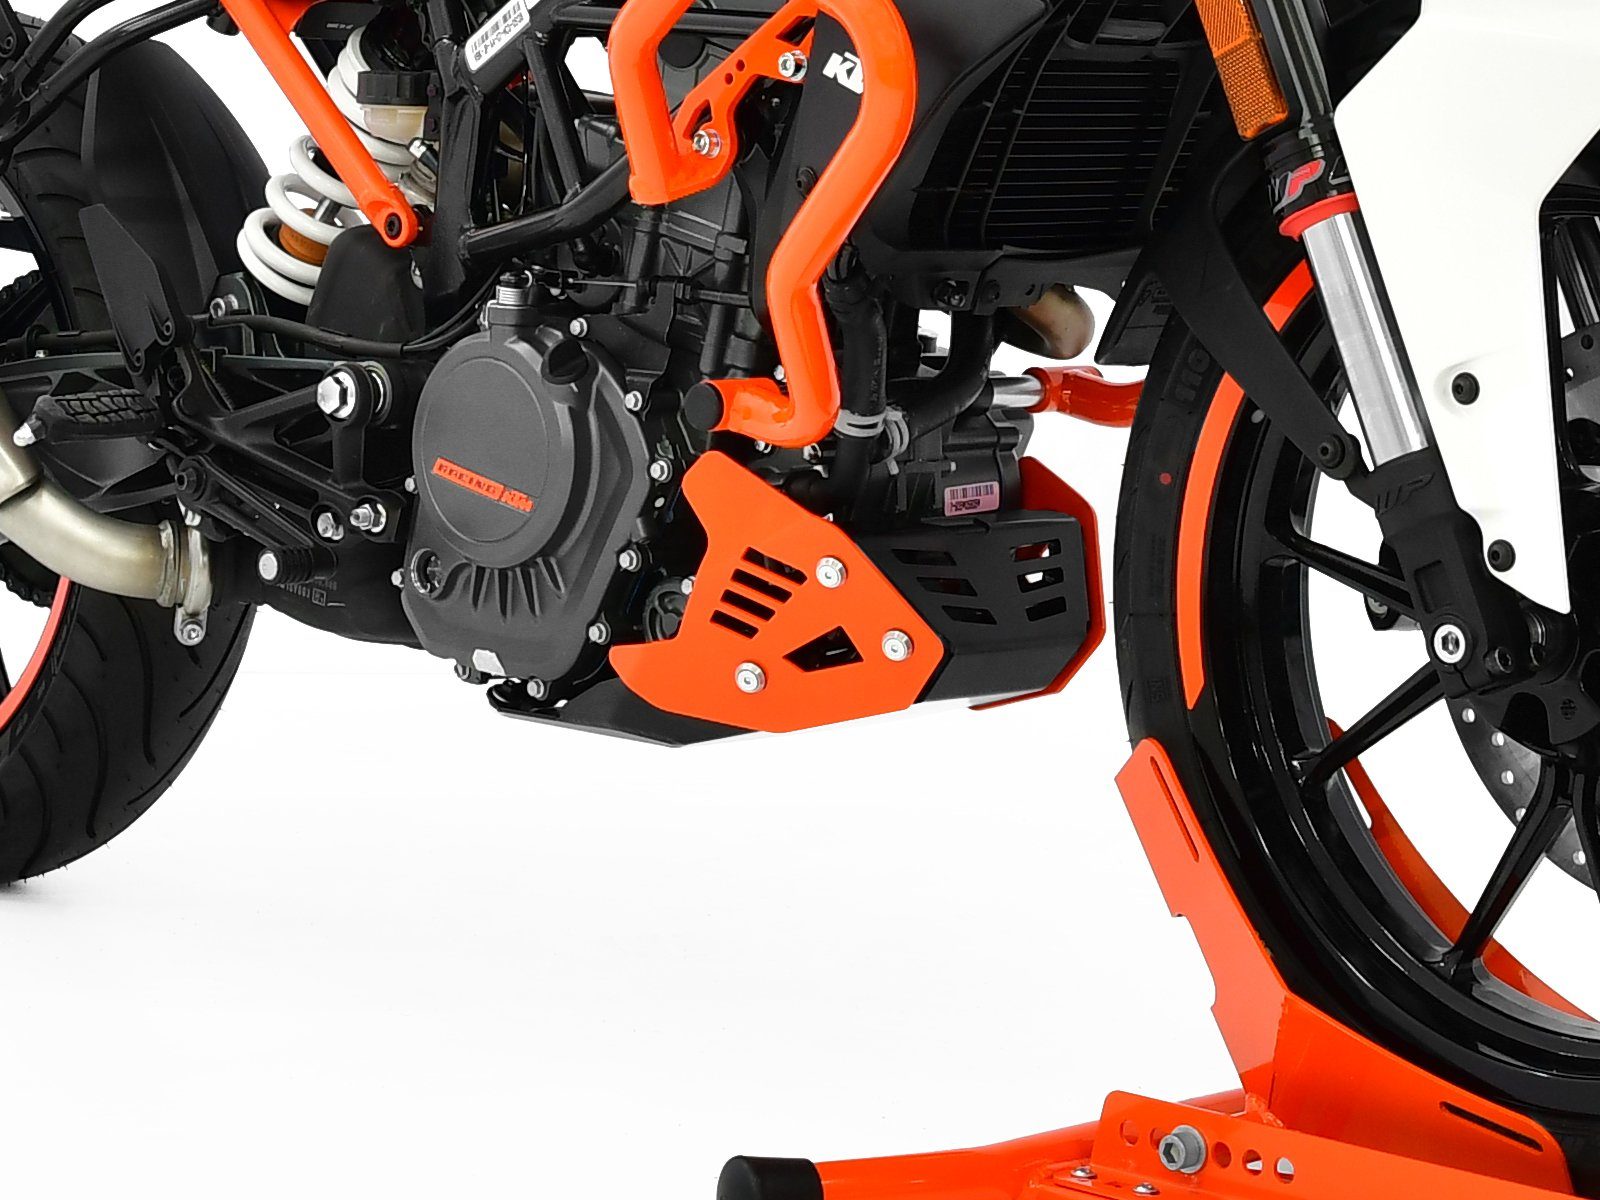 ZIEGER Motor-Schutzhülle Motorschutz für KTM 125 Duke schwarz / orange